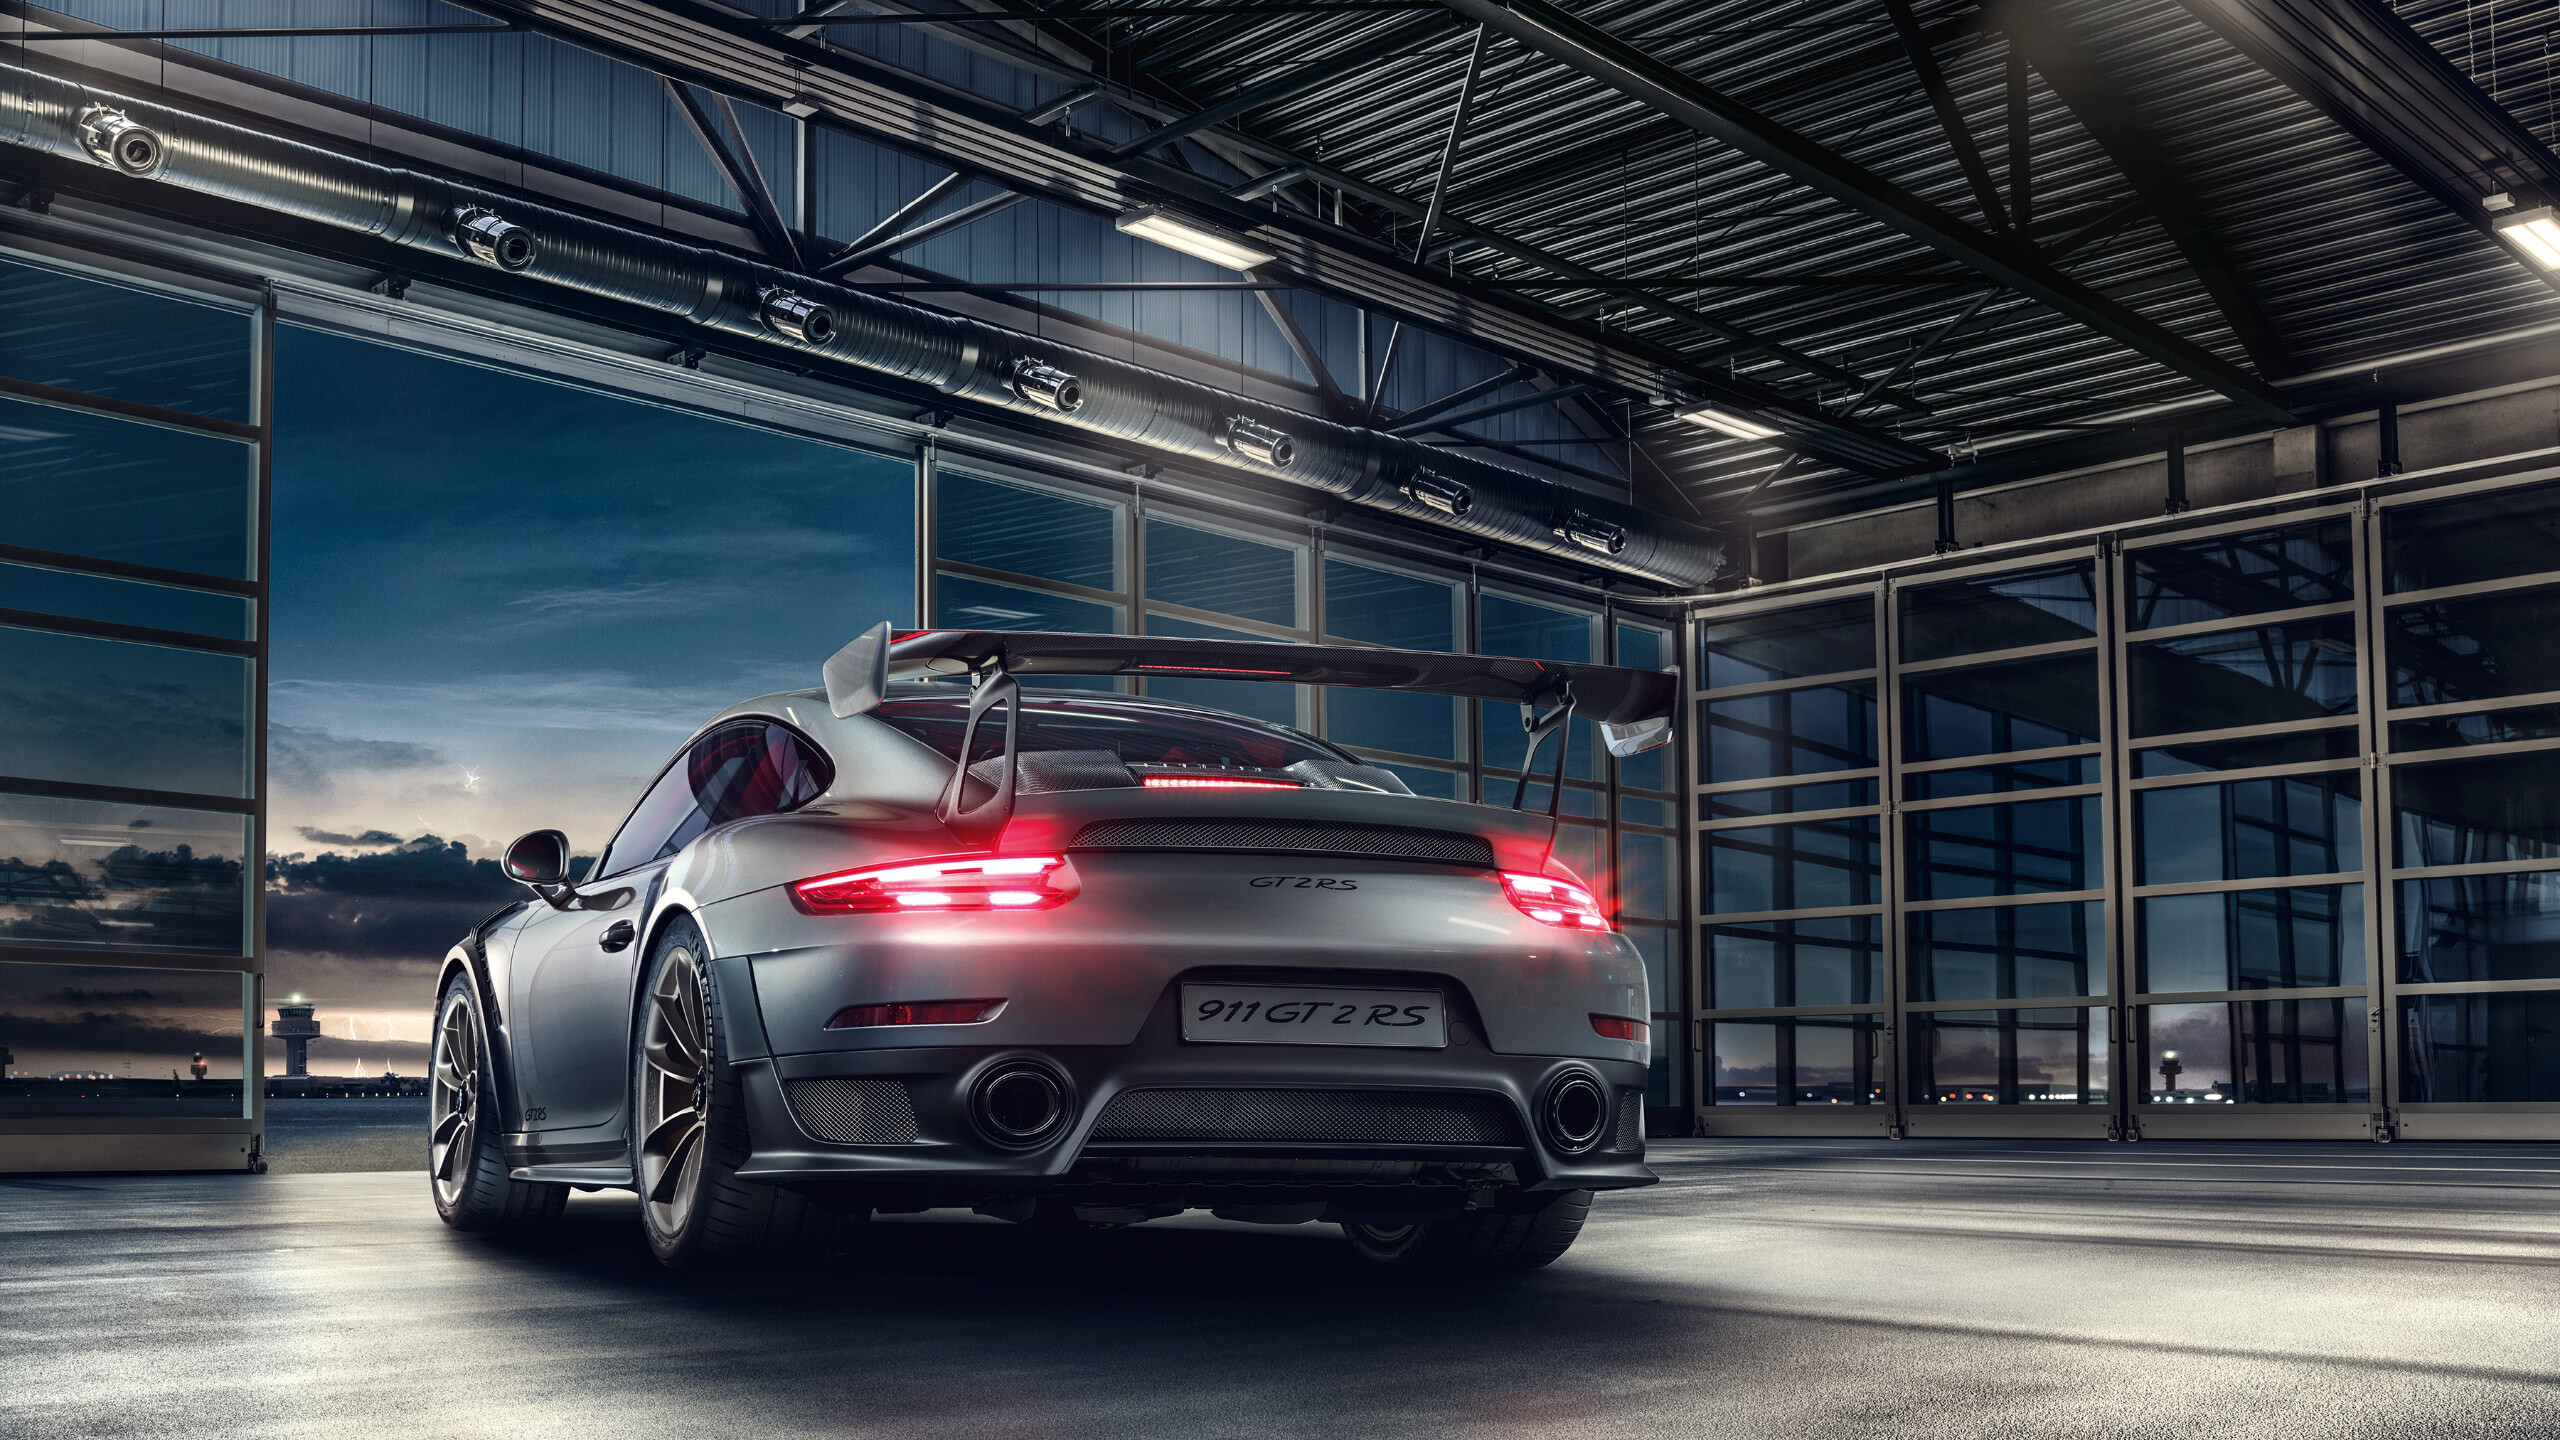 Porsche: 911 GT2 RS Rear, Automotive lighting. 2560x1440 HD Wallpaper.